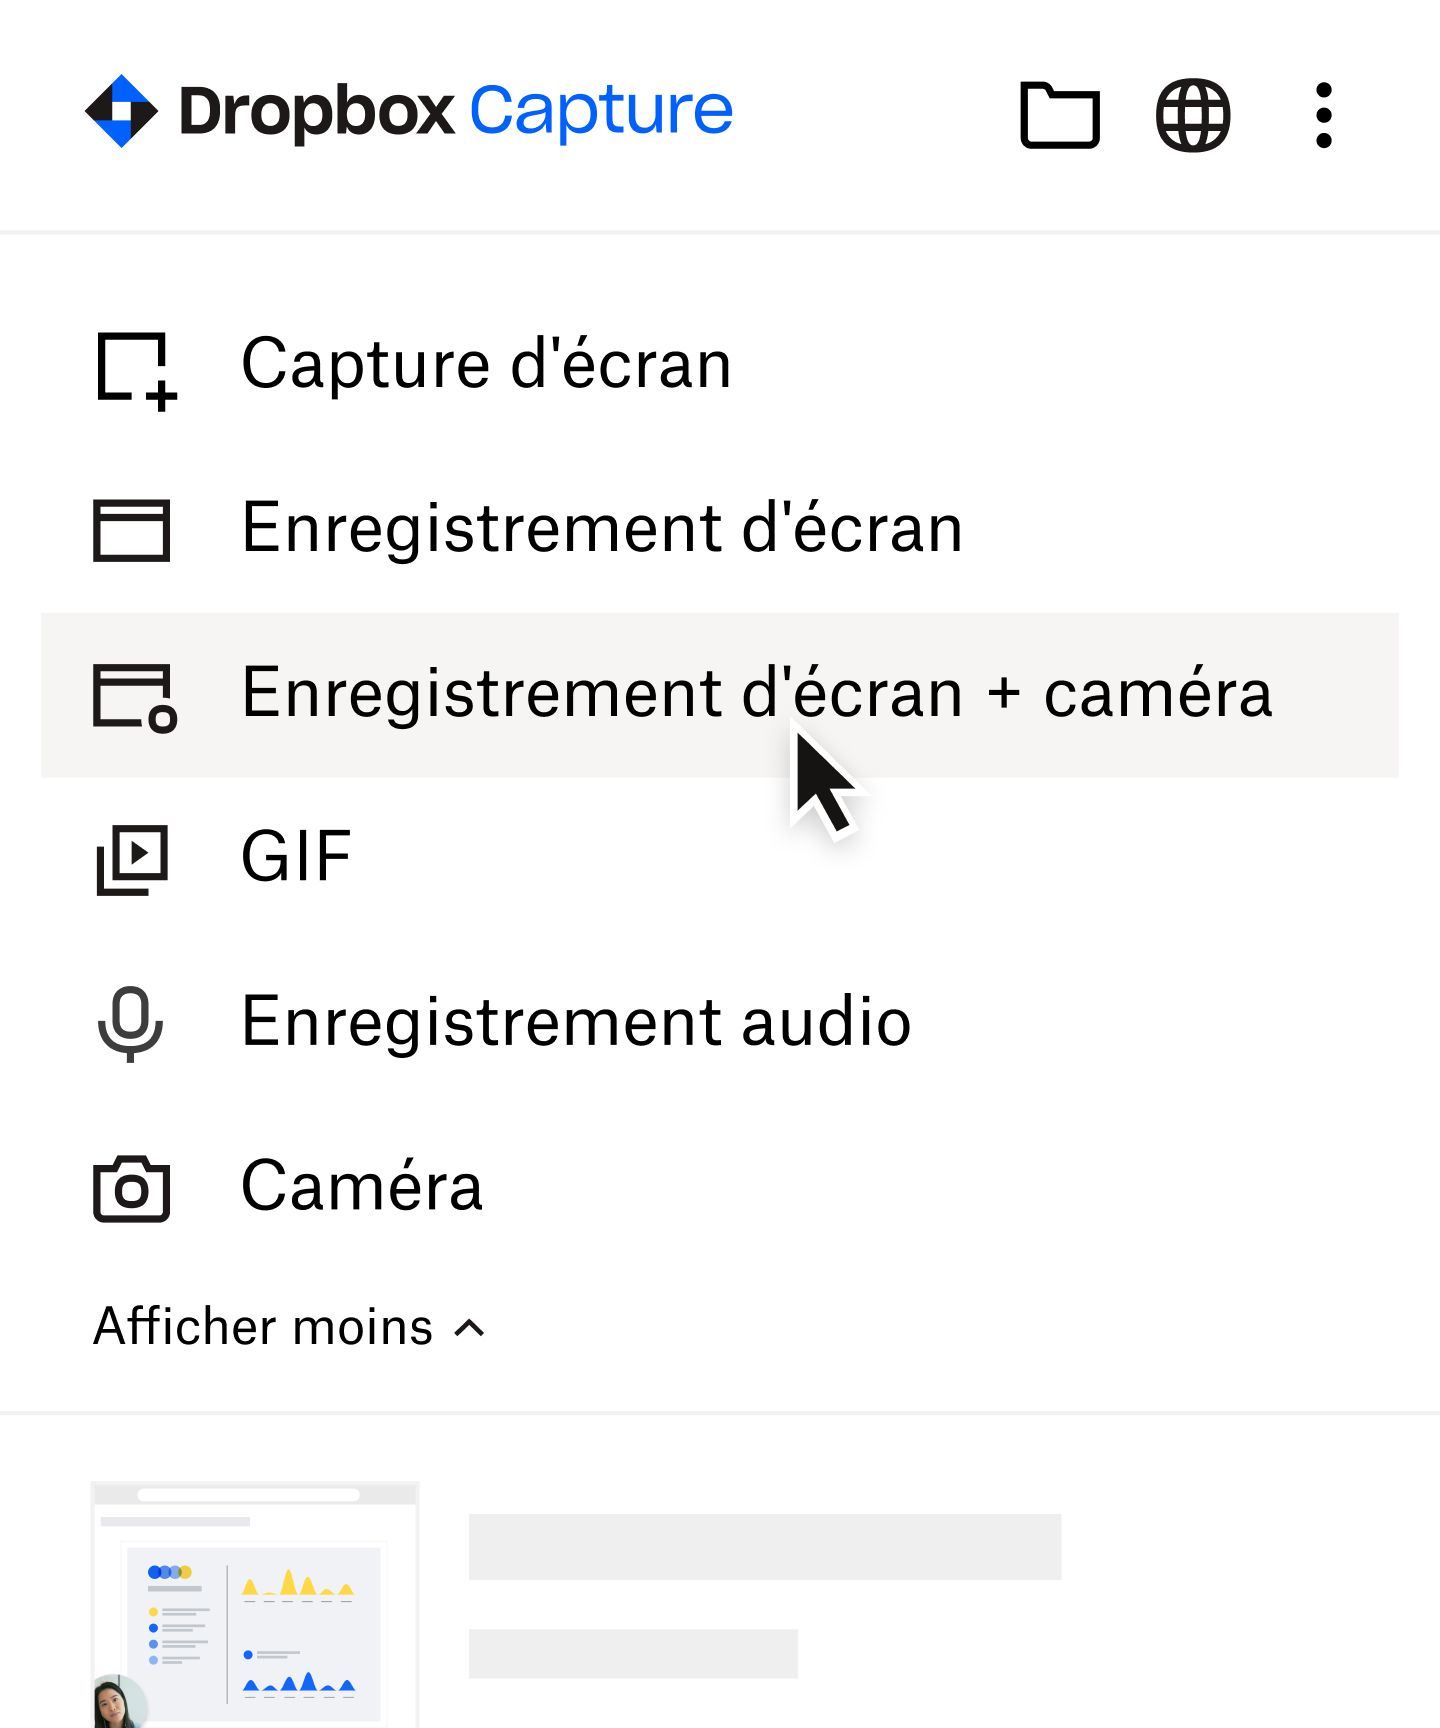 Utilisateur sélectionnant “Enregistrement d’écran + caméra” dans le menu Dropbox Capture